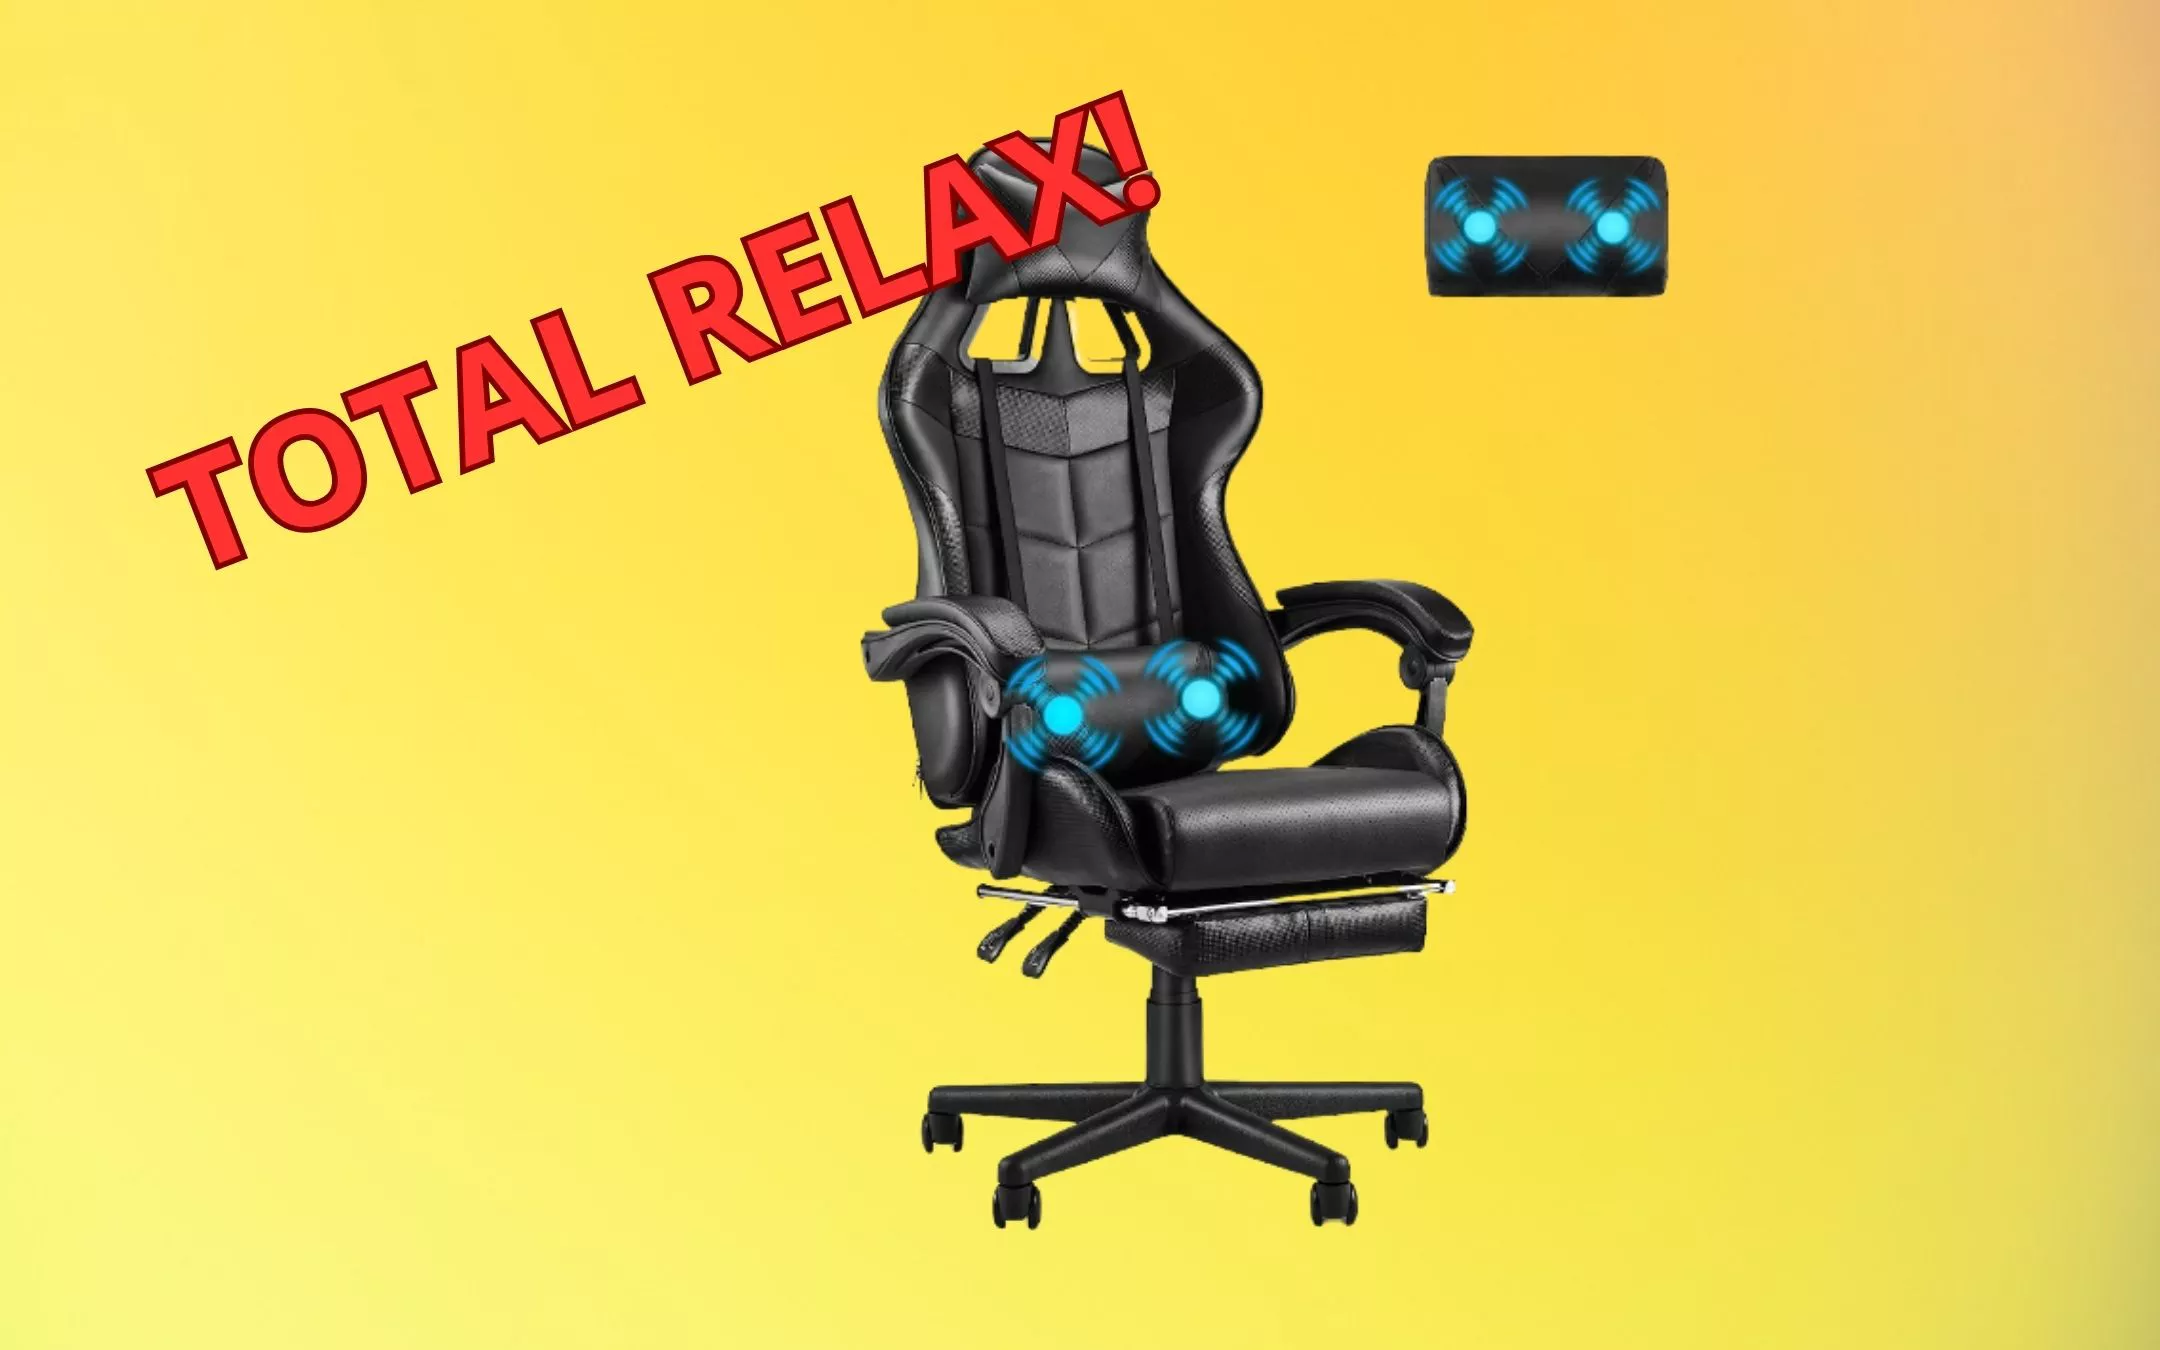 OFFERTA A TEMPO: Sedia gaming massaggiante, gioca e rilassati! - Webnews